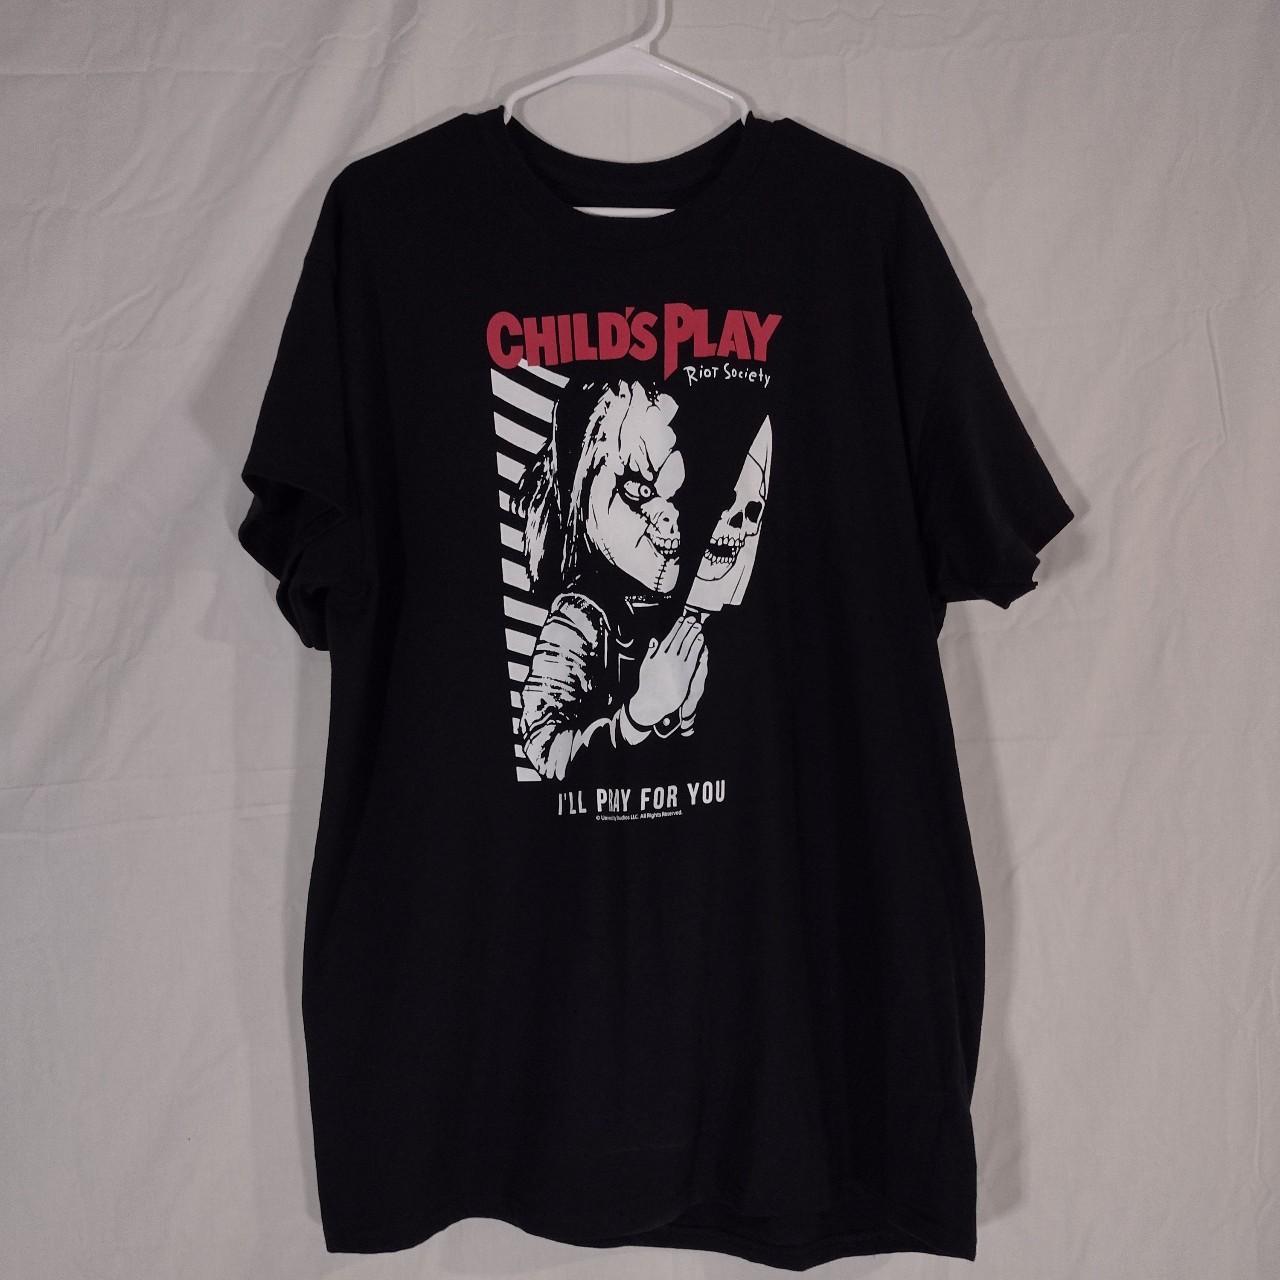 Child's Play Chucky X Riot Society black t shirt has... - Depop